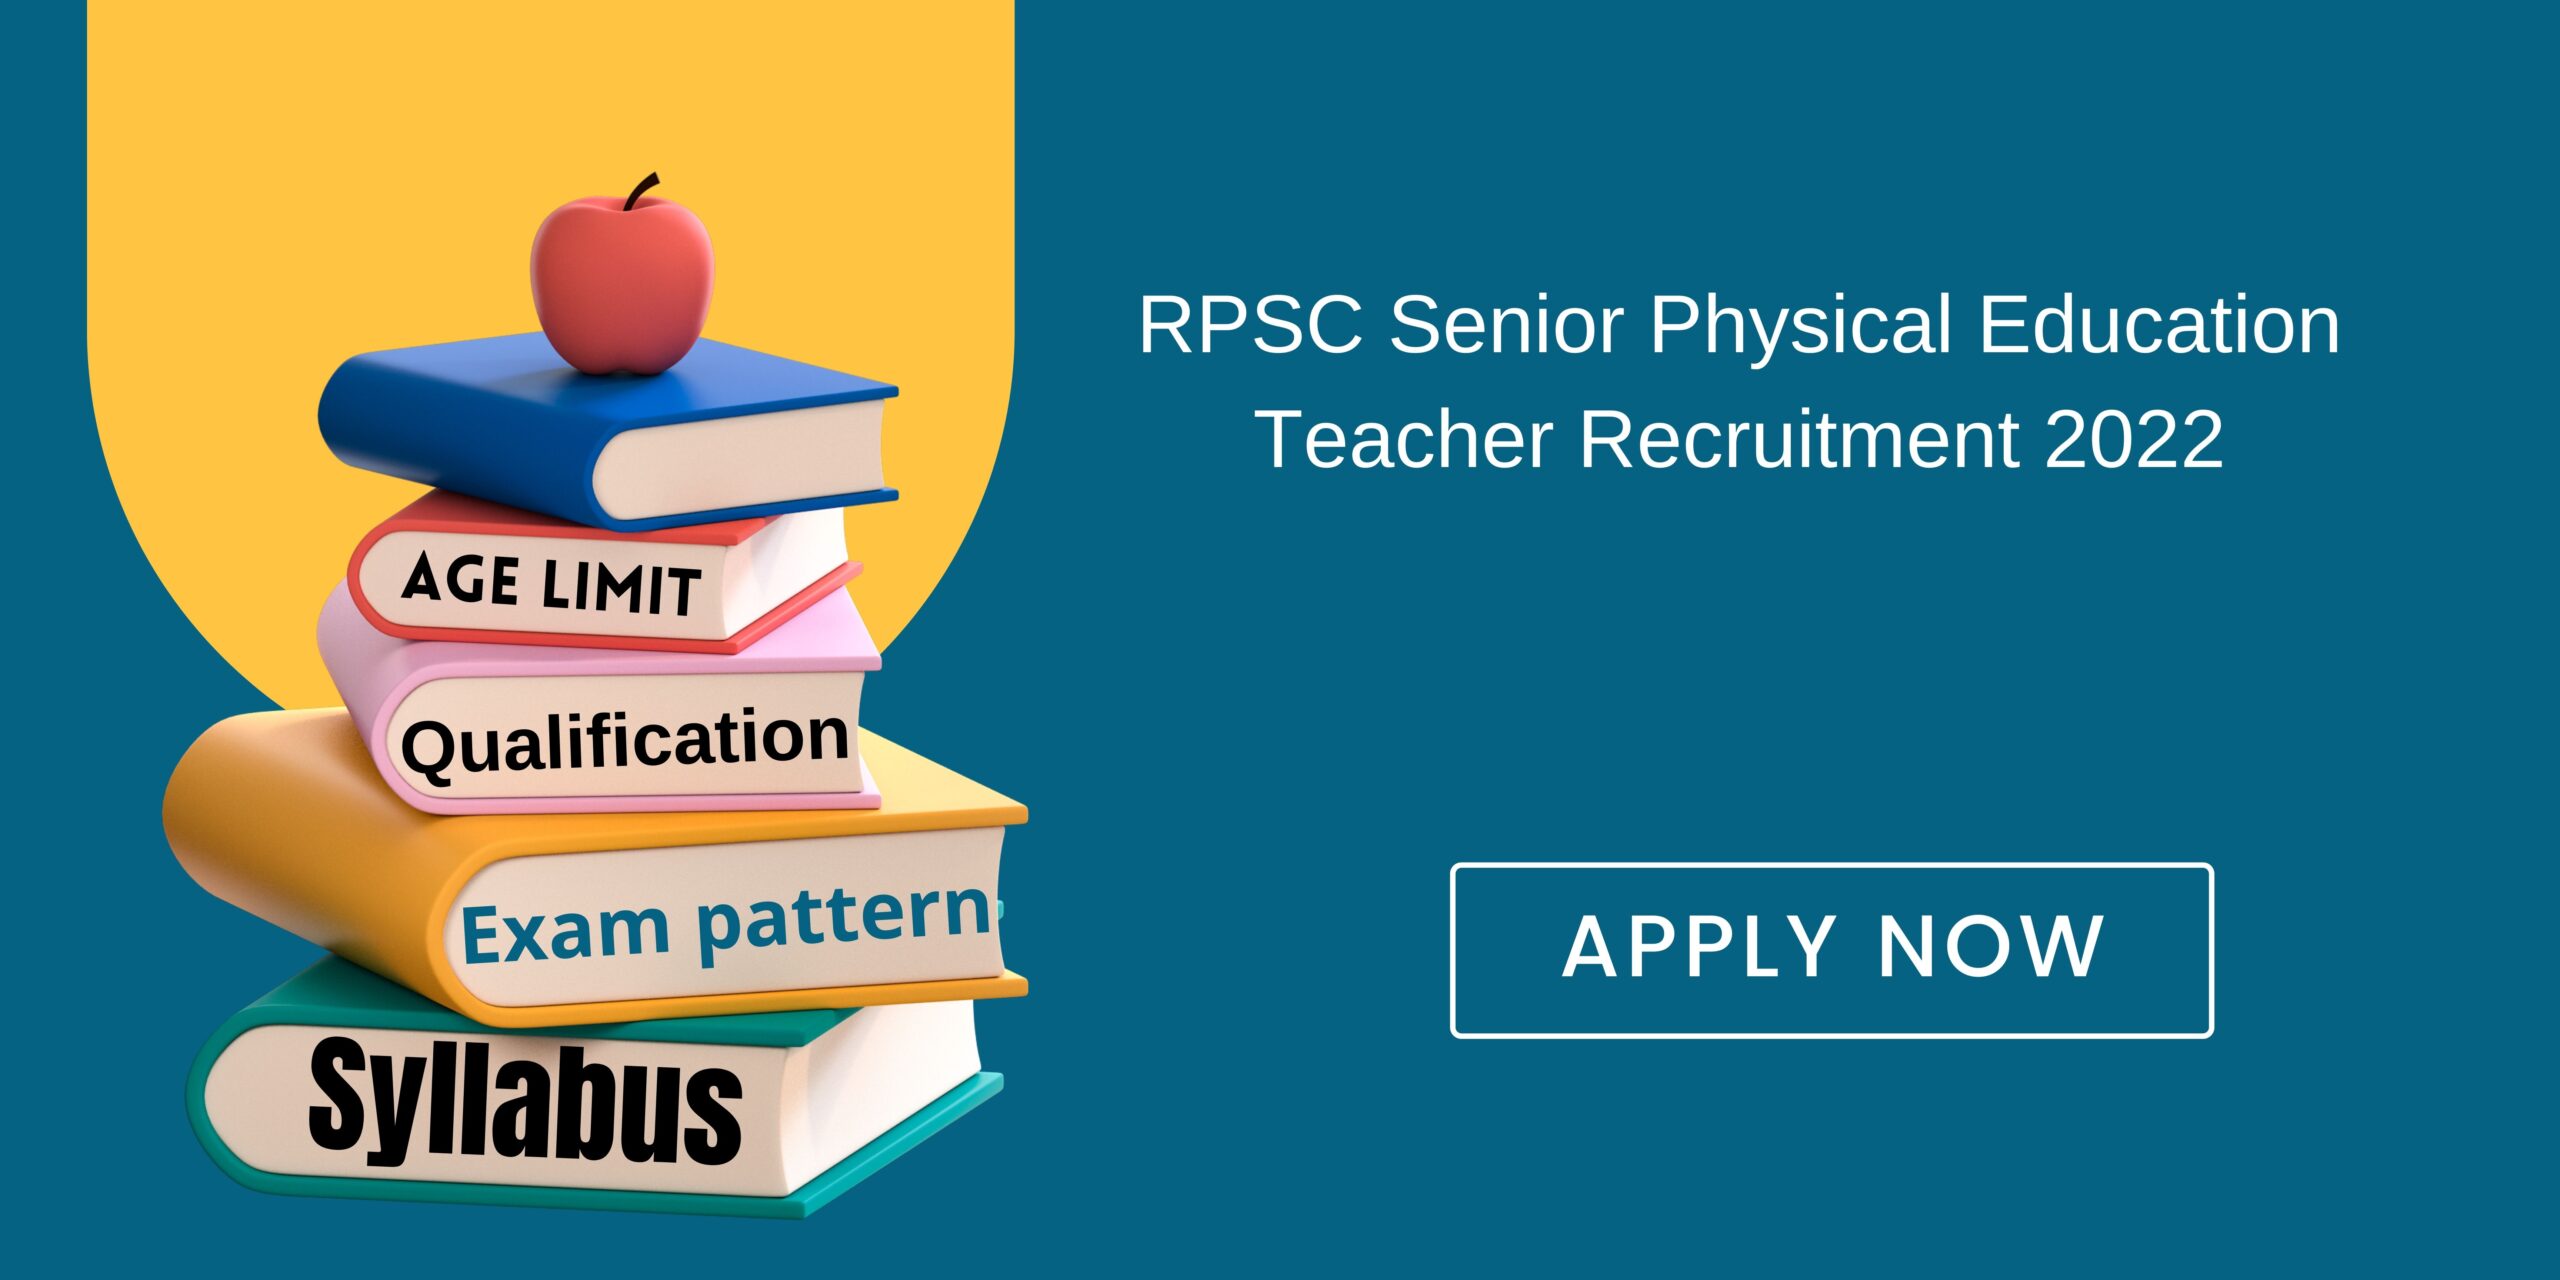 RPSC Senior Physical Education Teacher Recruitment 2022